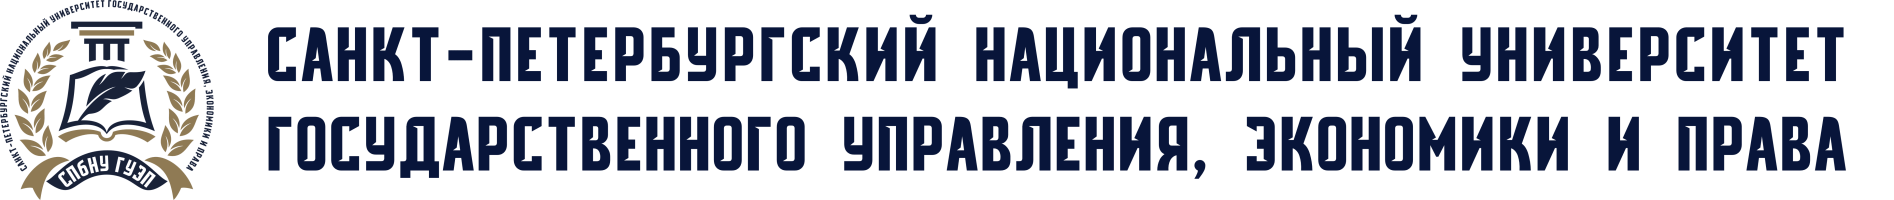 Образовательный портал Санкт-Петербургского национального университета государственного управления, экономики и права